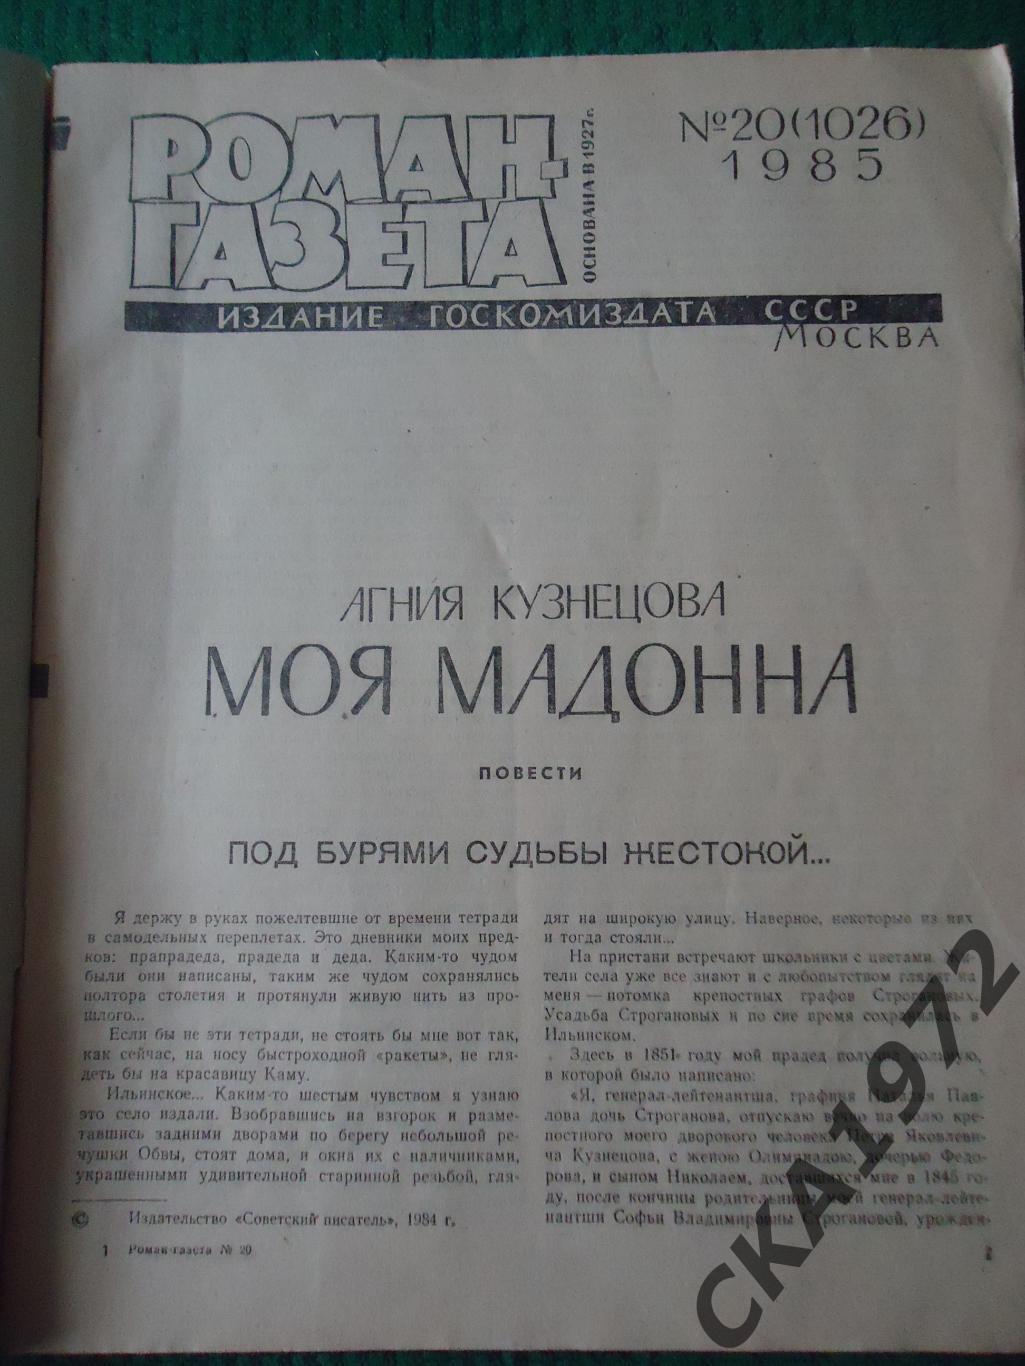 роман-газета № 20 1985 Агния Кузнецова Моя Мадонна 1